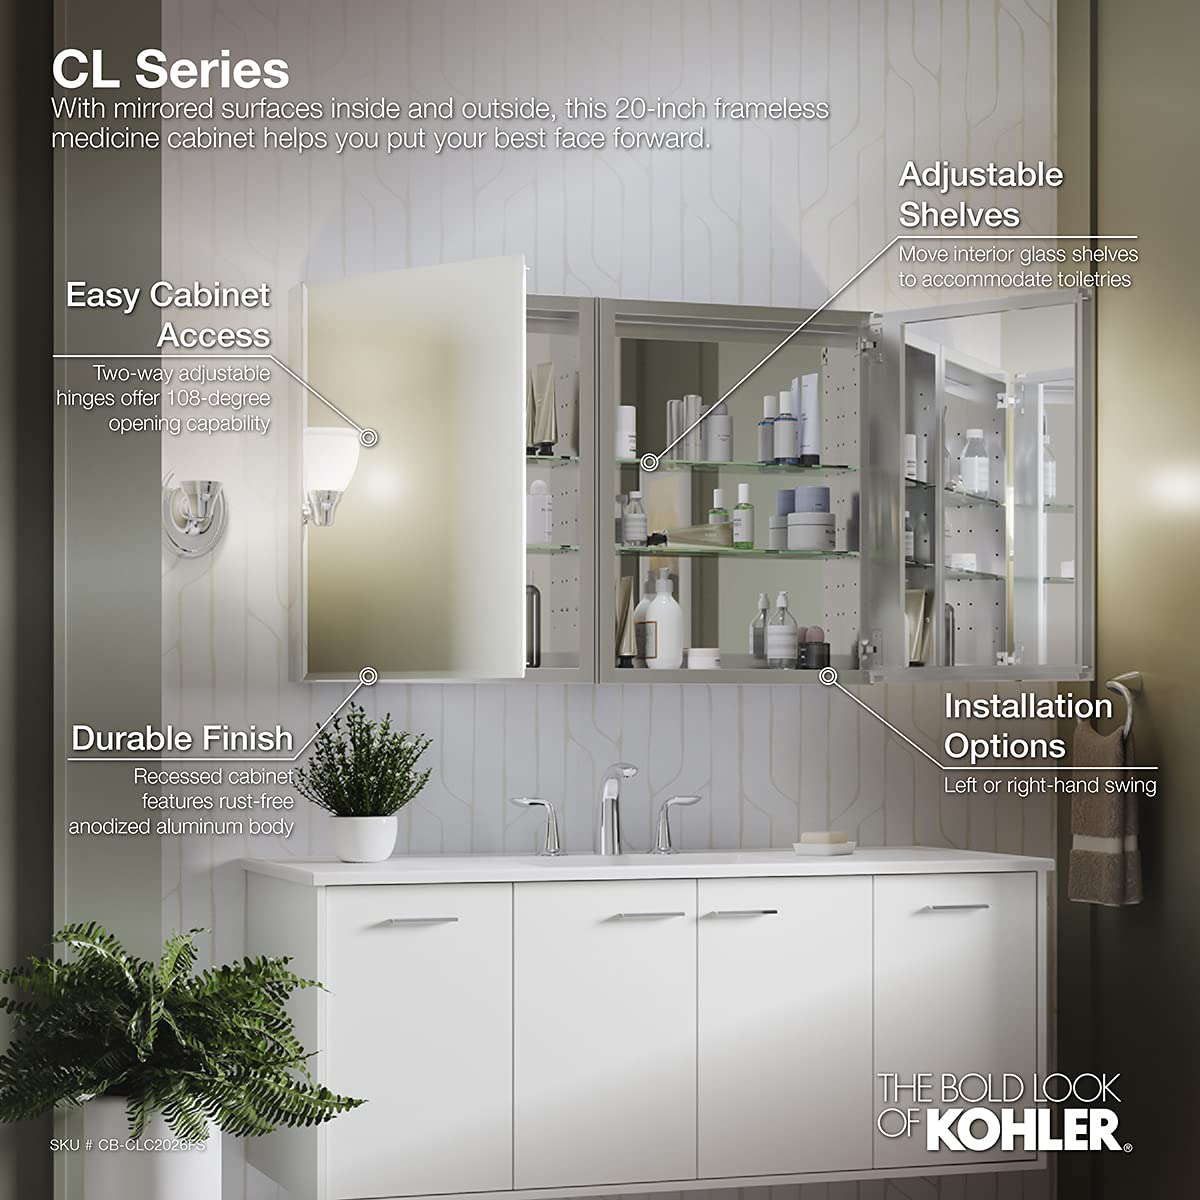 Kohler CB-CLC2026FS 20